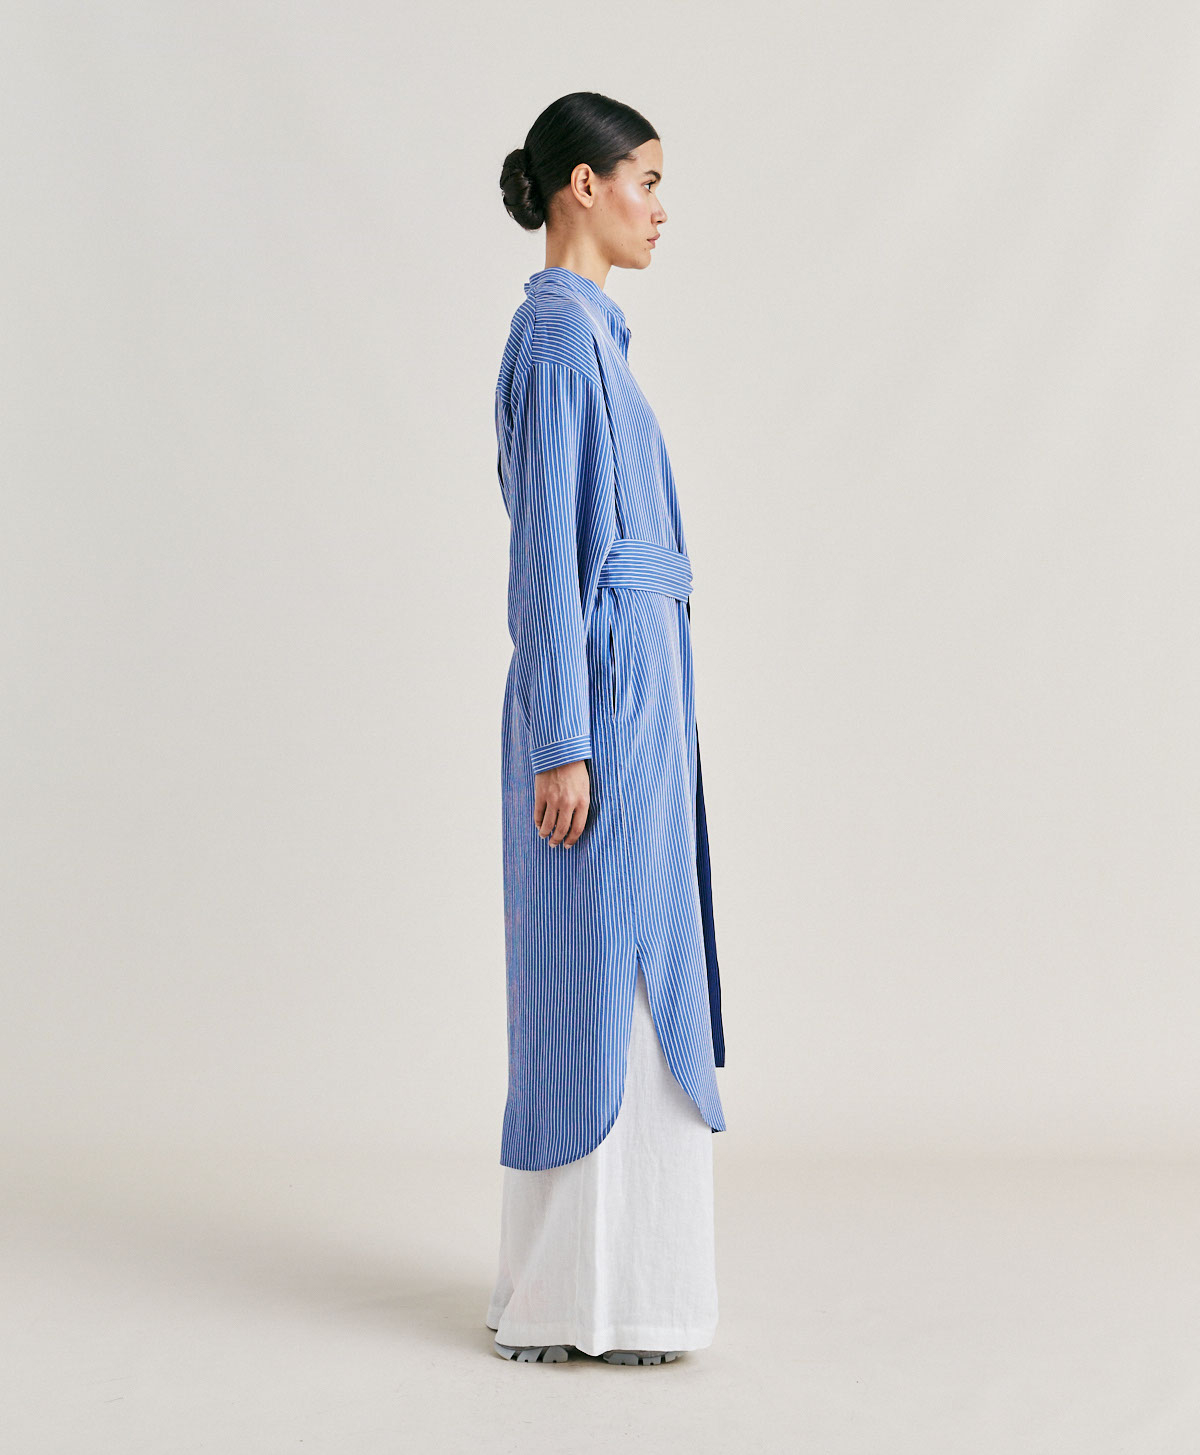 ZAIRA DRESS IN MULTI STRIPED VISCOSE SILK - LIGHT BLUE/CREAM - Momonì